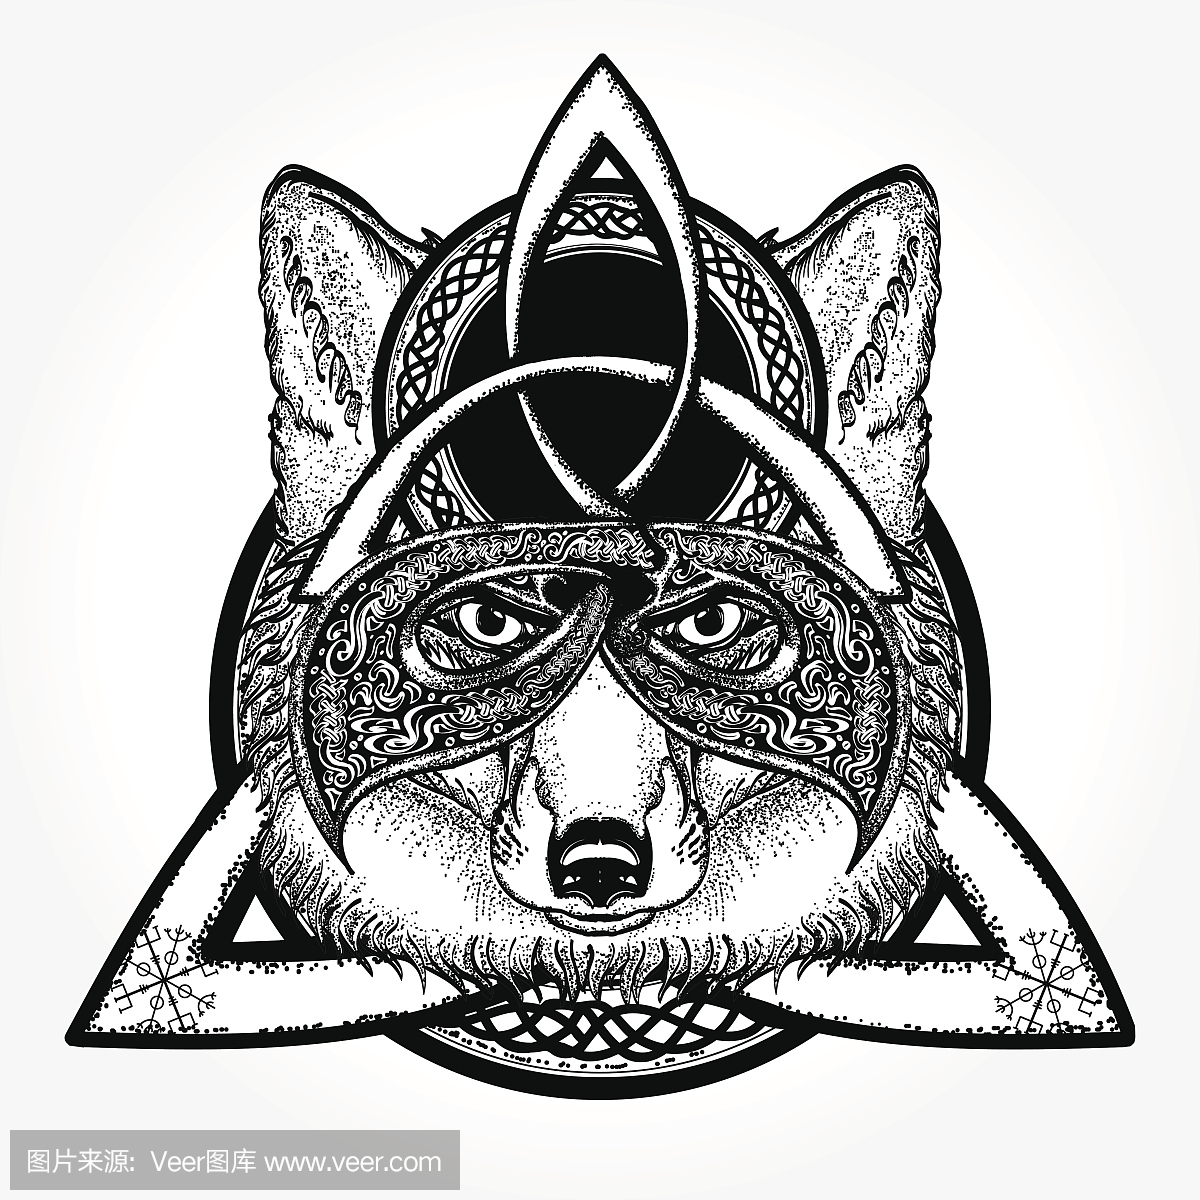 狐狸纹身和t恤设计。狐狸海盗在凯尔特风格,纹